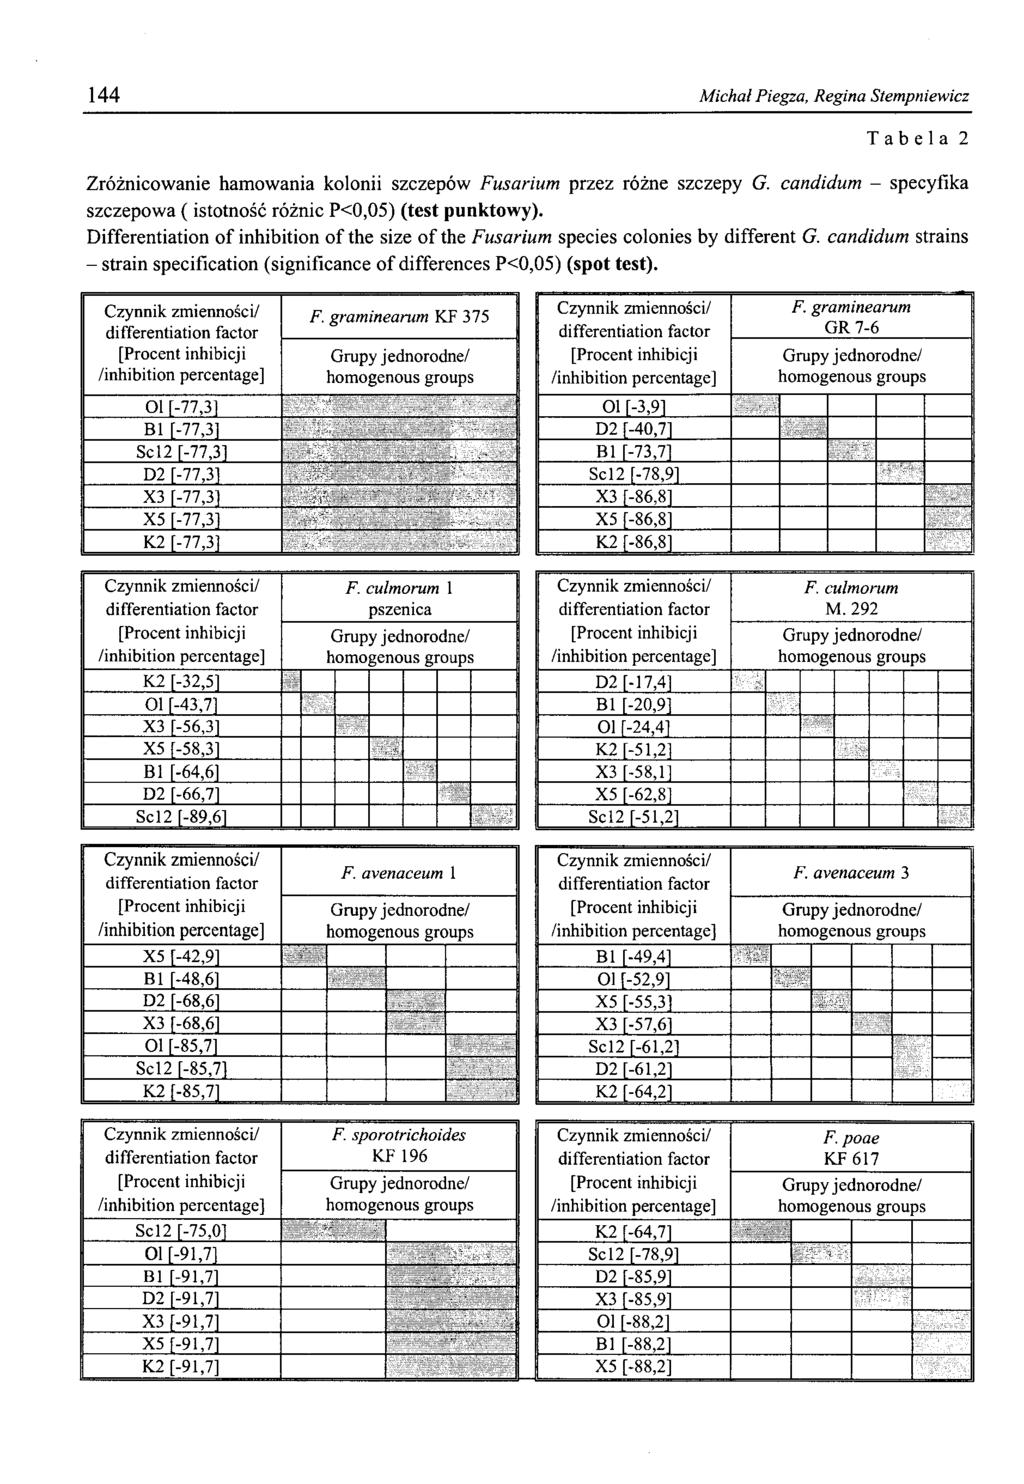 144 Michał Piegza, Regina Stempniewicz Tabela 2 Zróżnicowanie hamowania kolonii szczepów przez różne szczepy G. candidum - specyfika szczepowa ( istotność różnic P<0,05) (test punktowy).